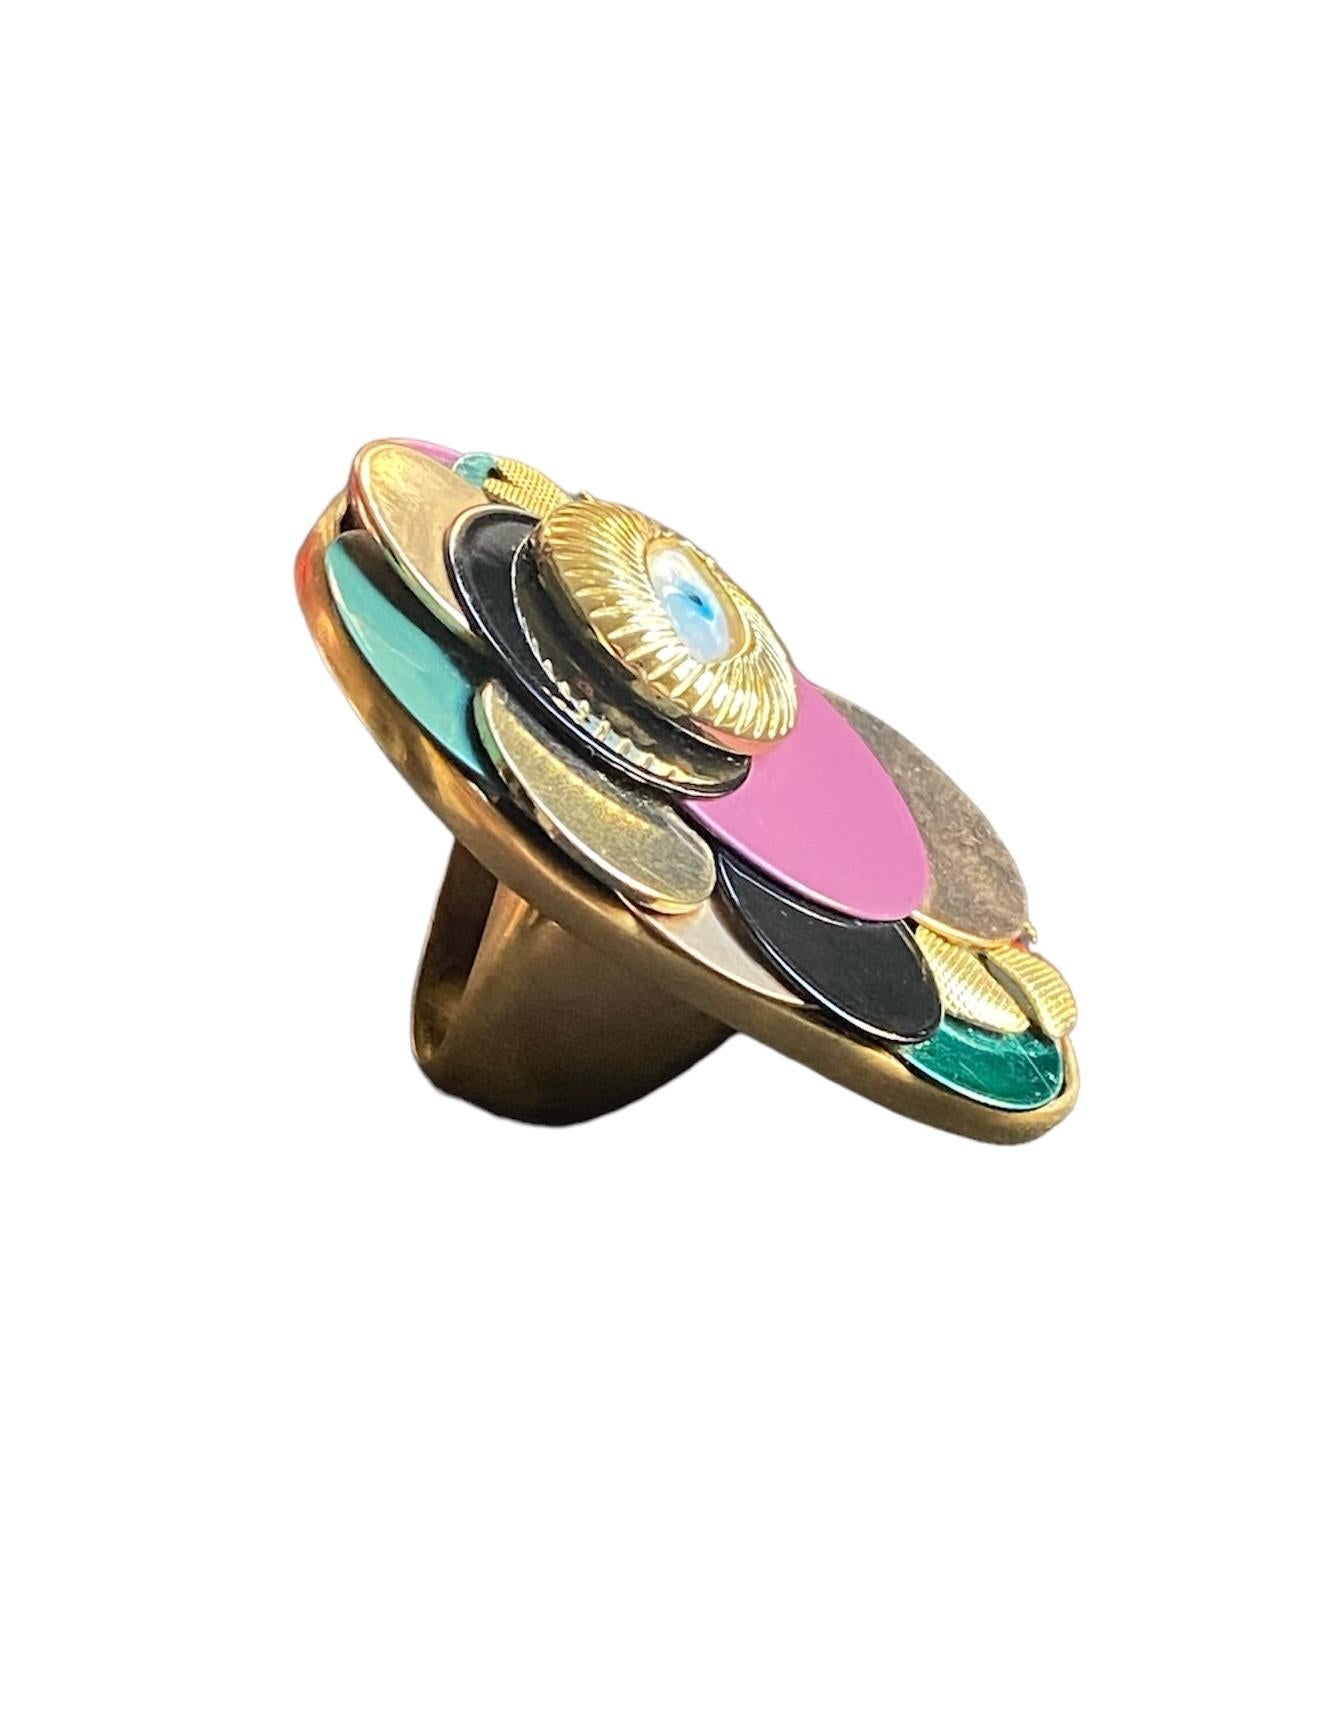 Einmaliger Ring. Hochwertiges Upcycling. Vergoldete Bronze und Vintage-Elemente. (Kunsthandwerker*in) im Angebot